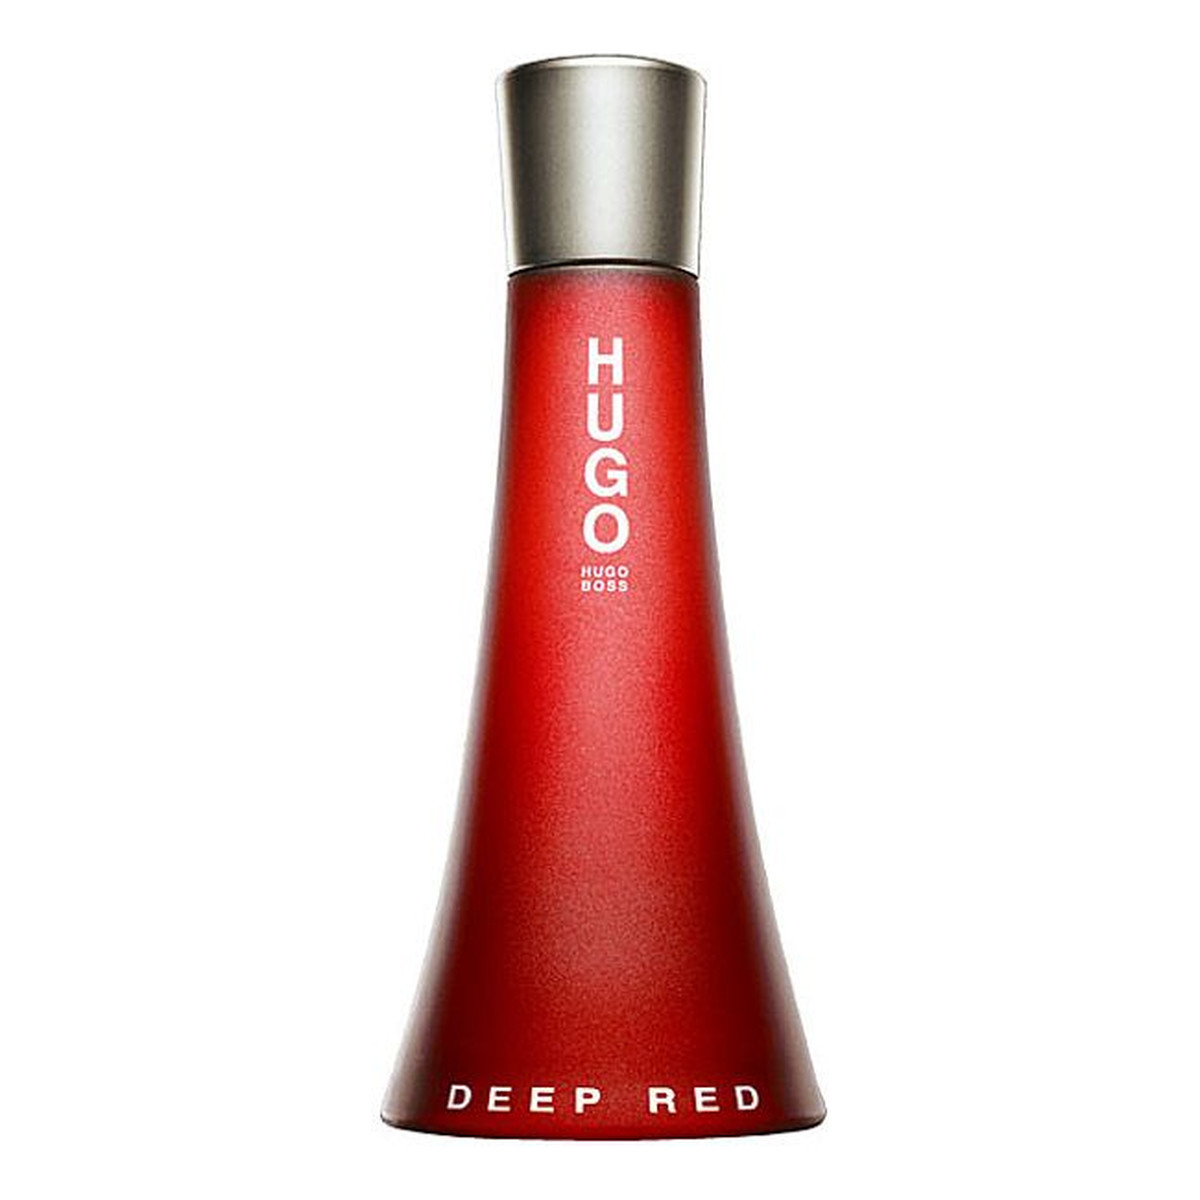 Hugo Boss Hugo Deep Red Woda Perfumowana Dla Kobiet 50ml